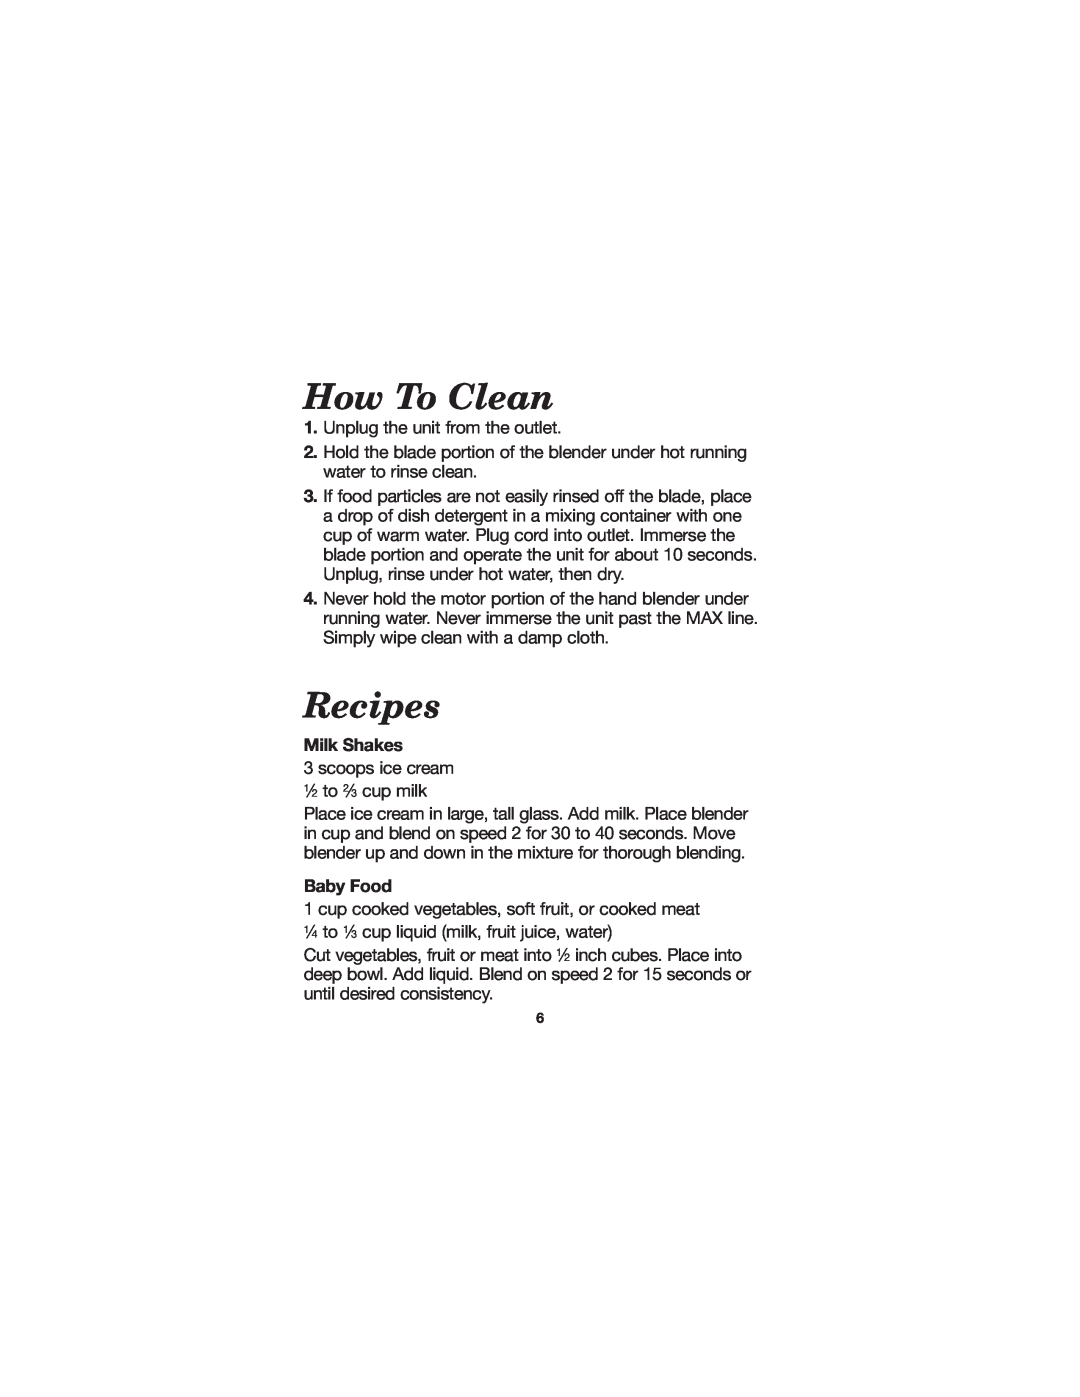 Hamilton Beach 840083300 manual How To Clean, Recipes, Milk Shakes, Baby Food 